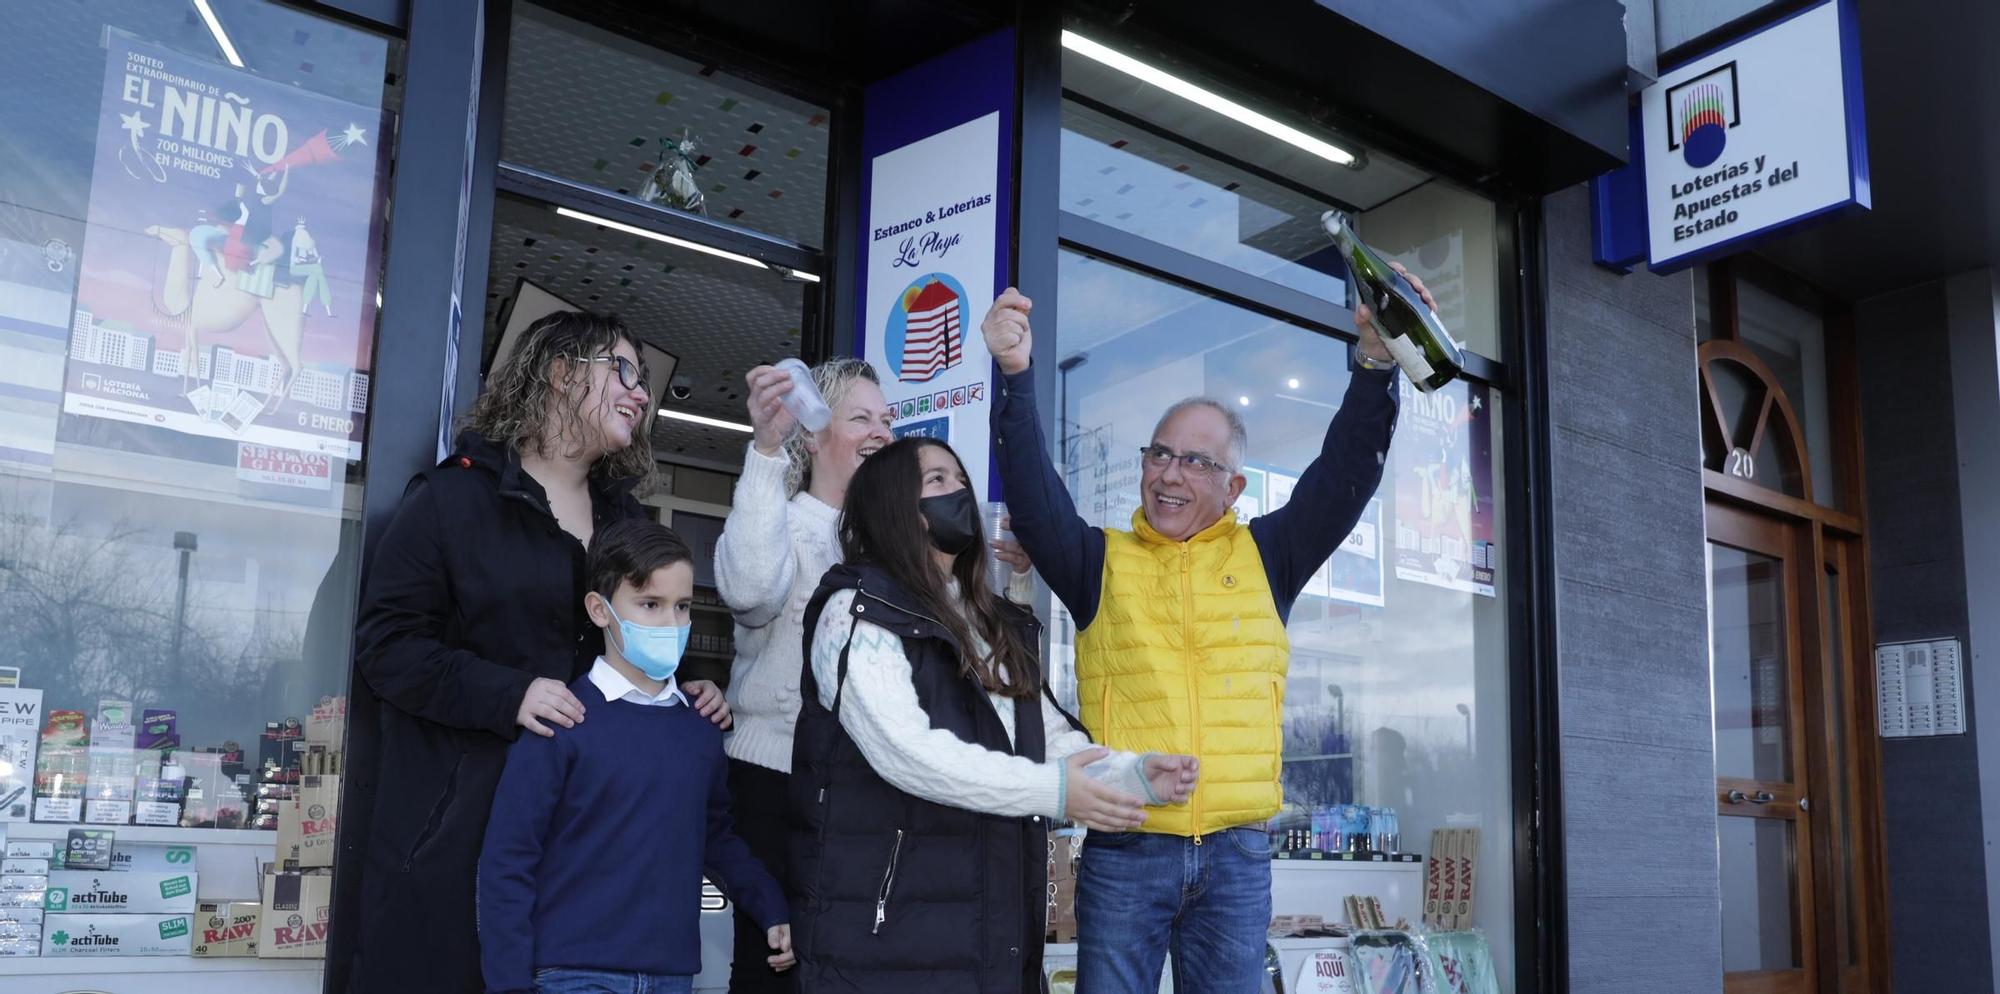 Asturias celebra su pequeña lluvia de premios en la Lotería del Niño de 2022